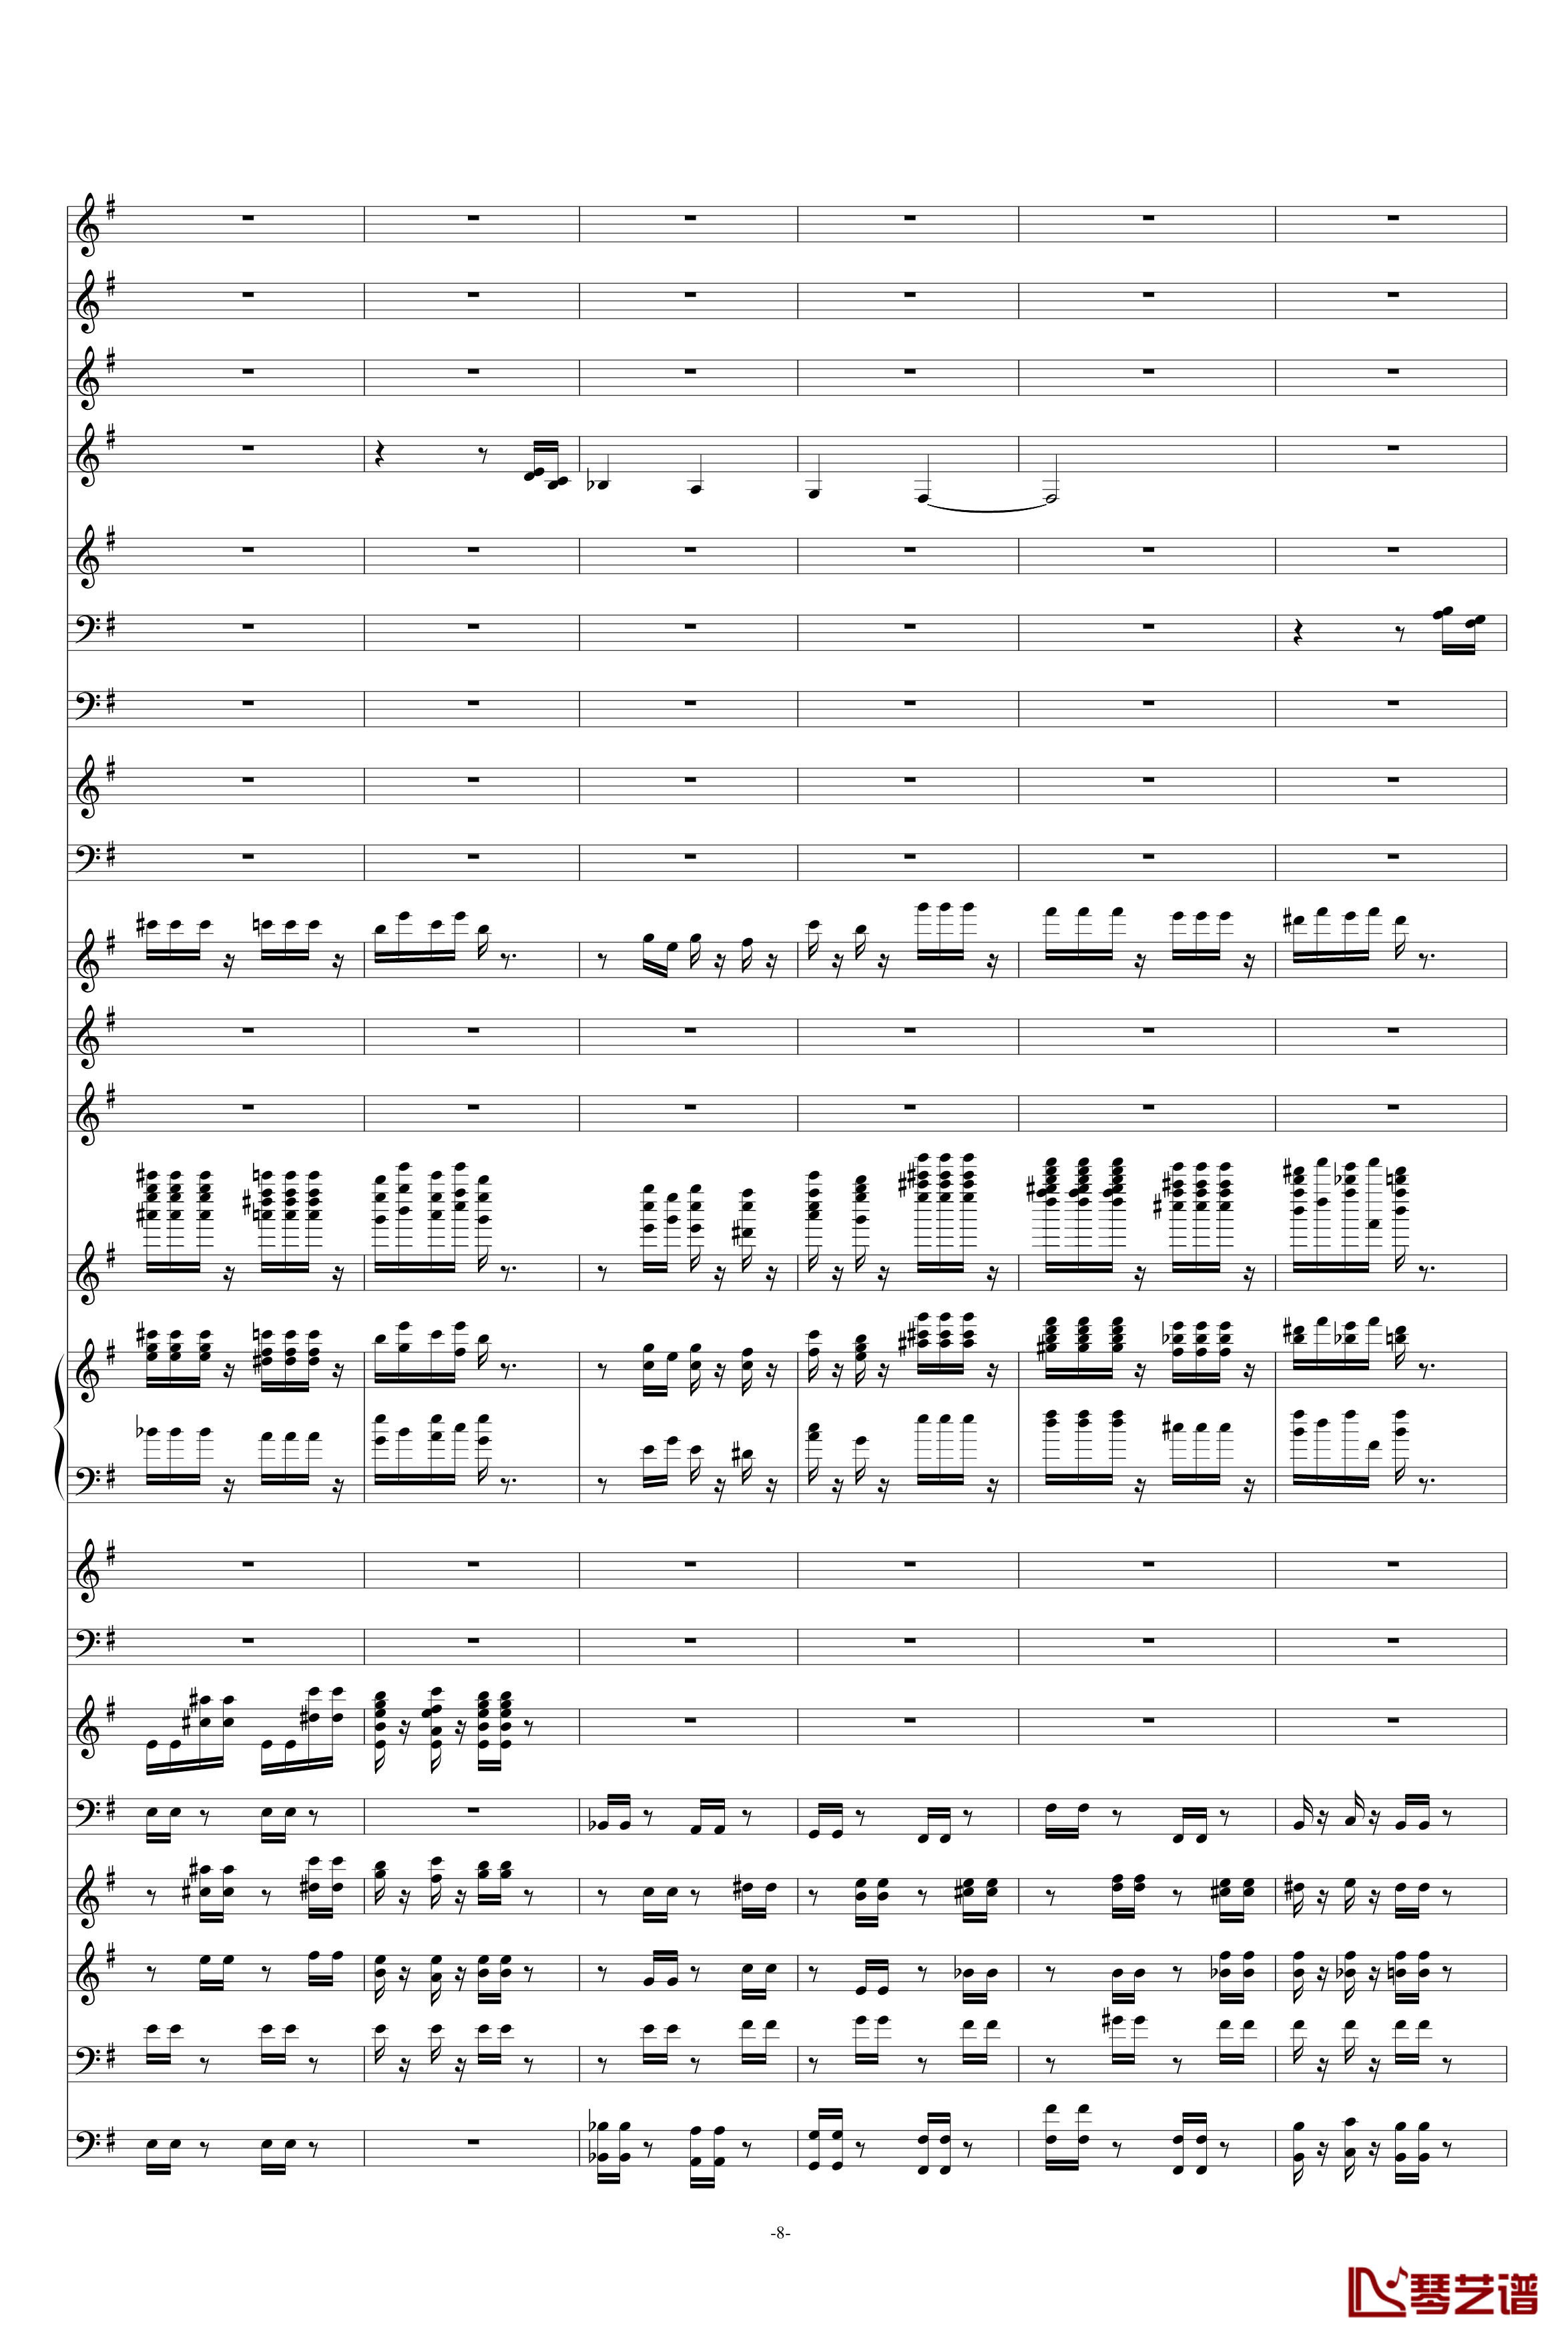 糖果仙子舞曲钢琴谱-柴科夫斯基-Peter Ilyich Tchaikovsky8